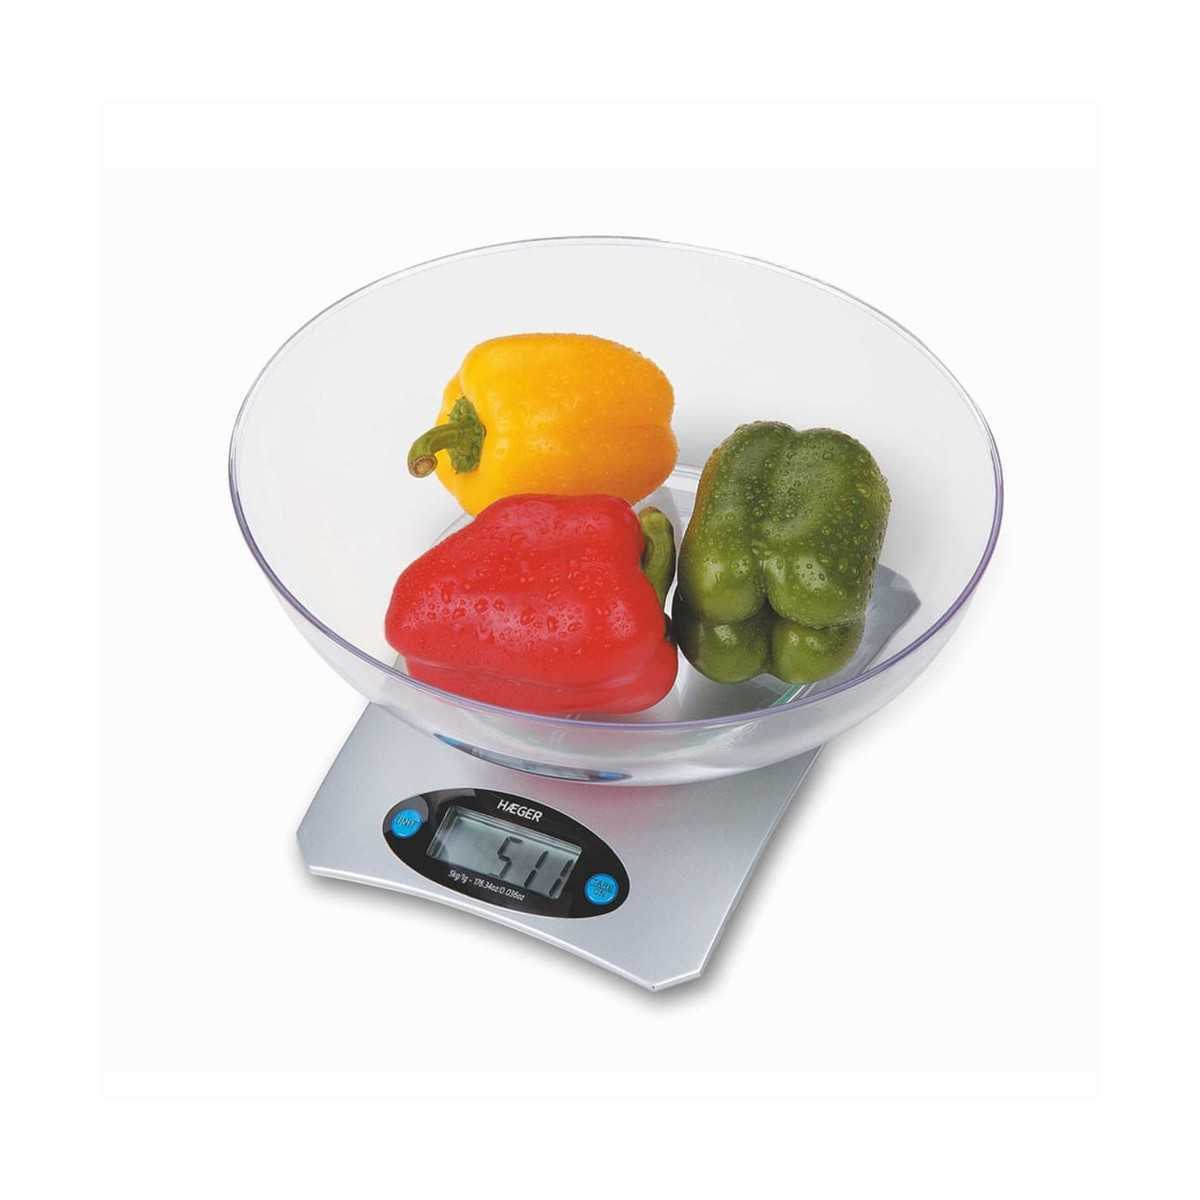 Báscula digital de cocina con pesas para alimentos, color rojo, báscula  electrónica de cocina para el hogar, cocina, HUYP